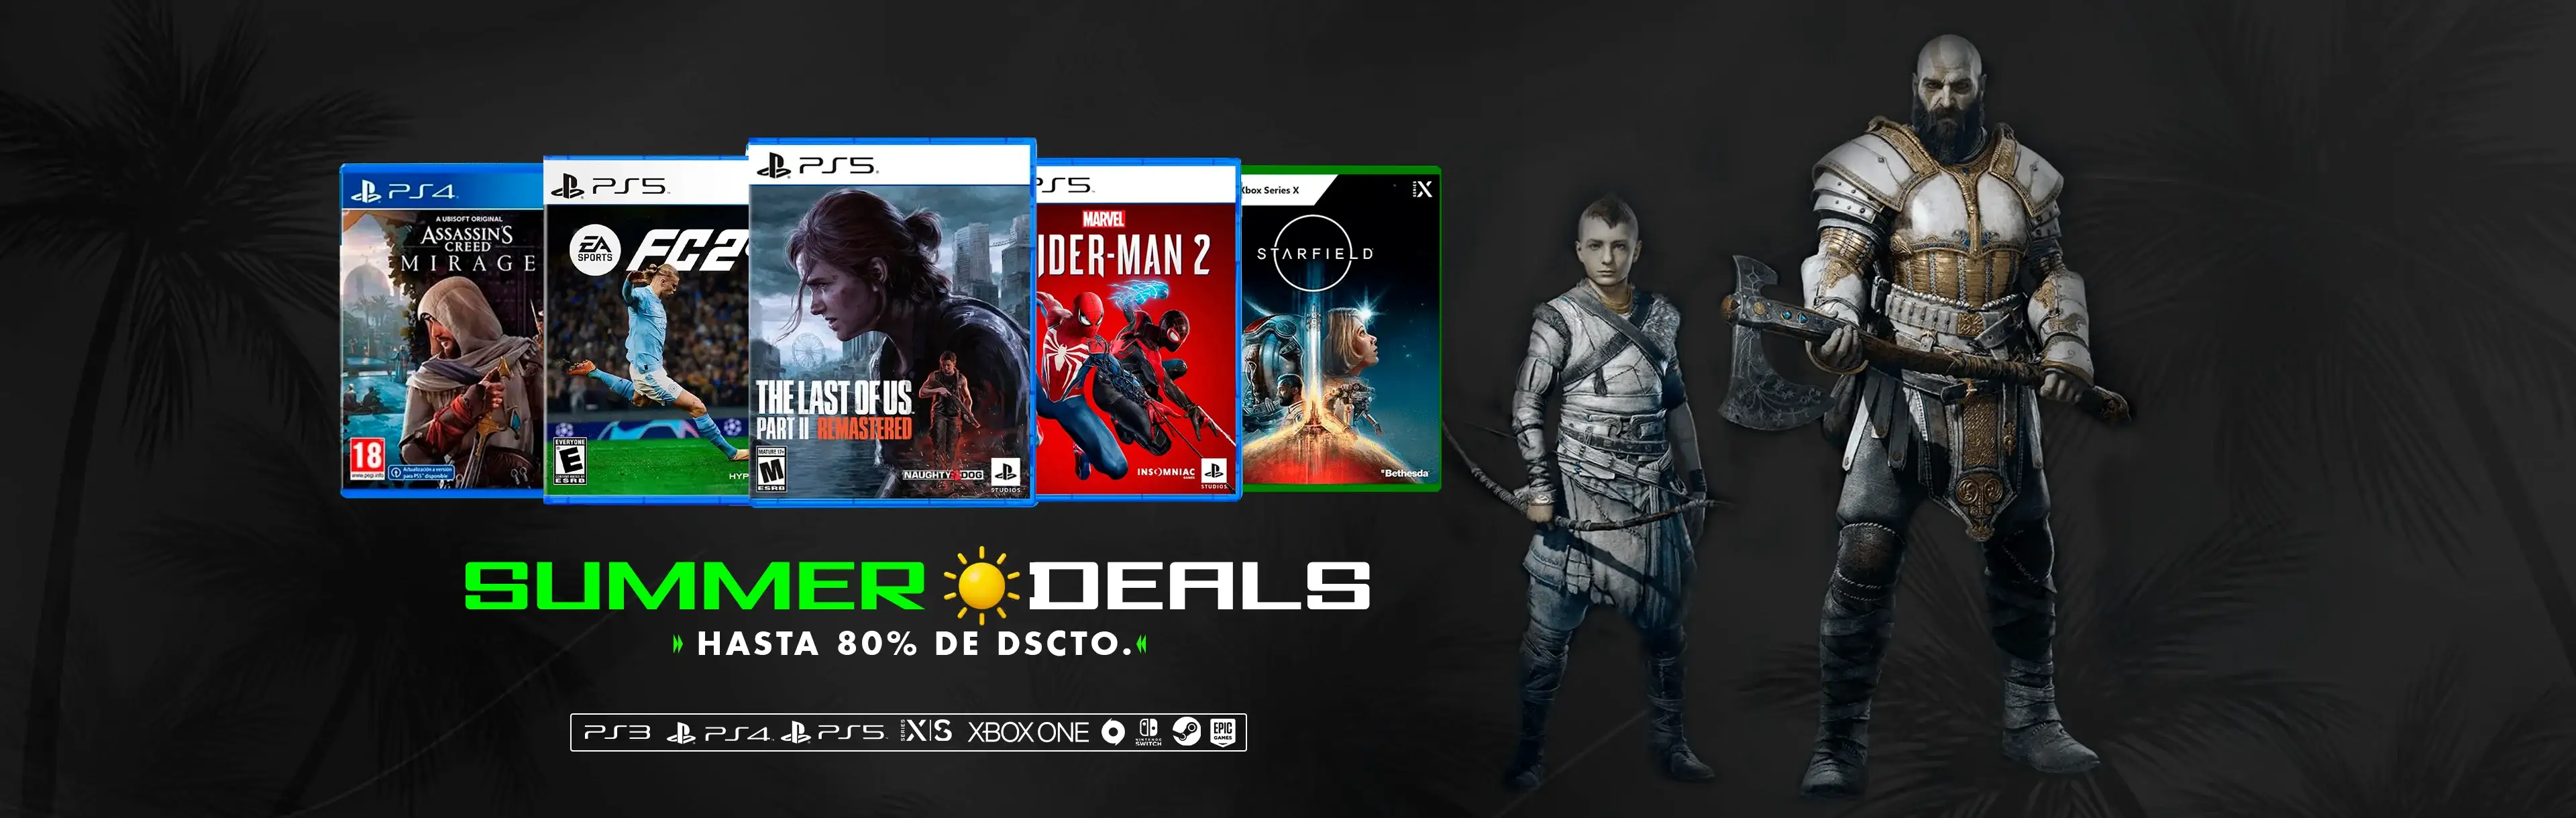 Juegos Digitales Bolivia  Venta de juegos Digitales PS3 PS4 Ofertas